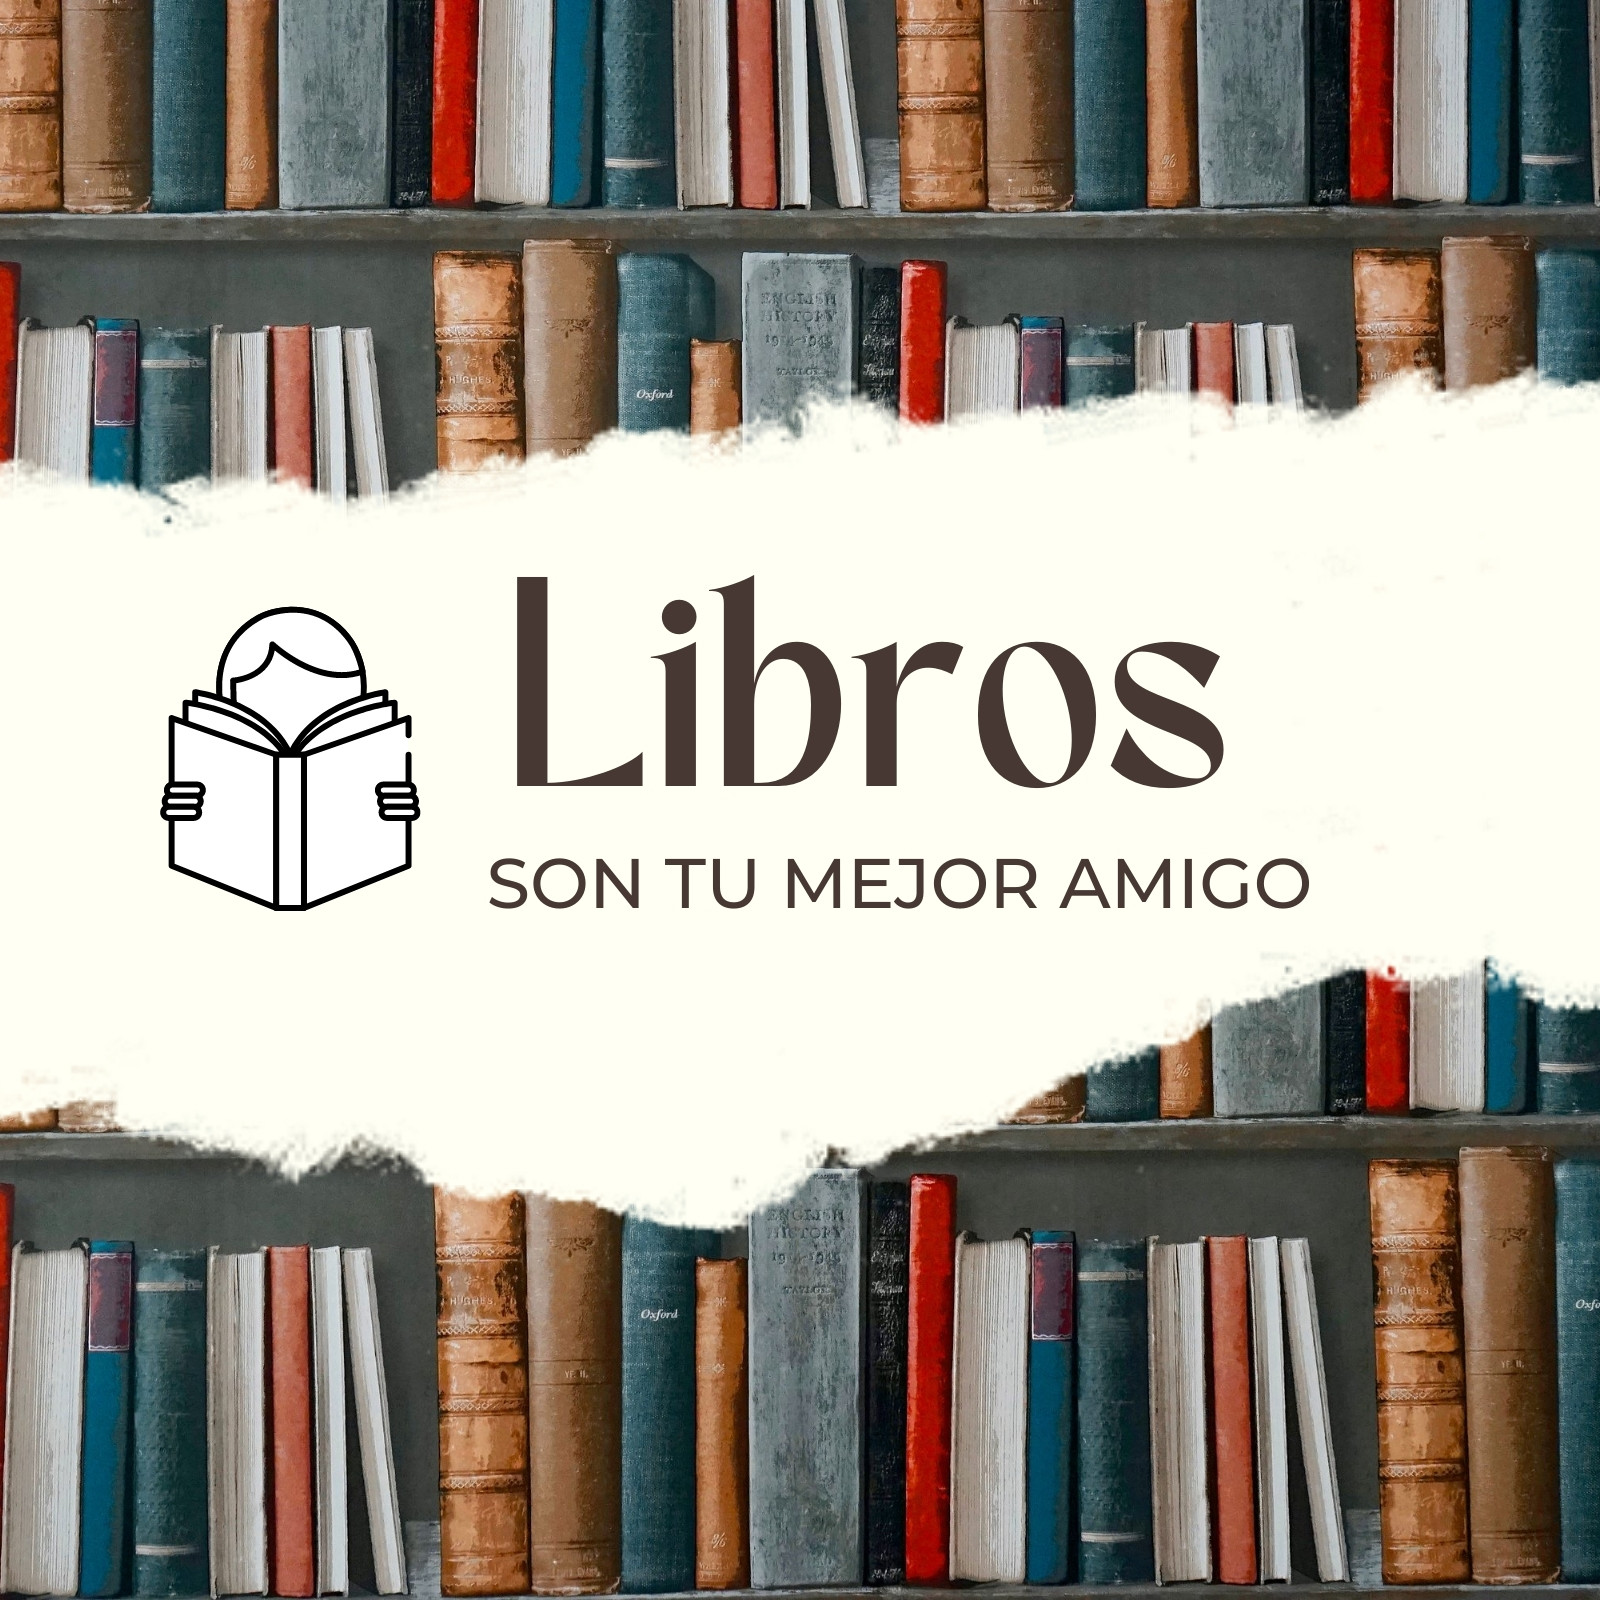 Diario de Lectura: Cuaderno para anotar libros leídos - Lista de las 100  mejores novelas clásicas - Regalo para los amantes de la lectura (Spanish